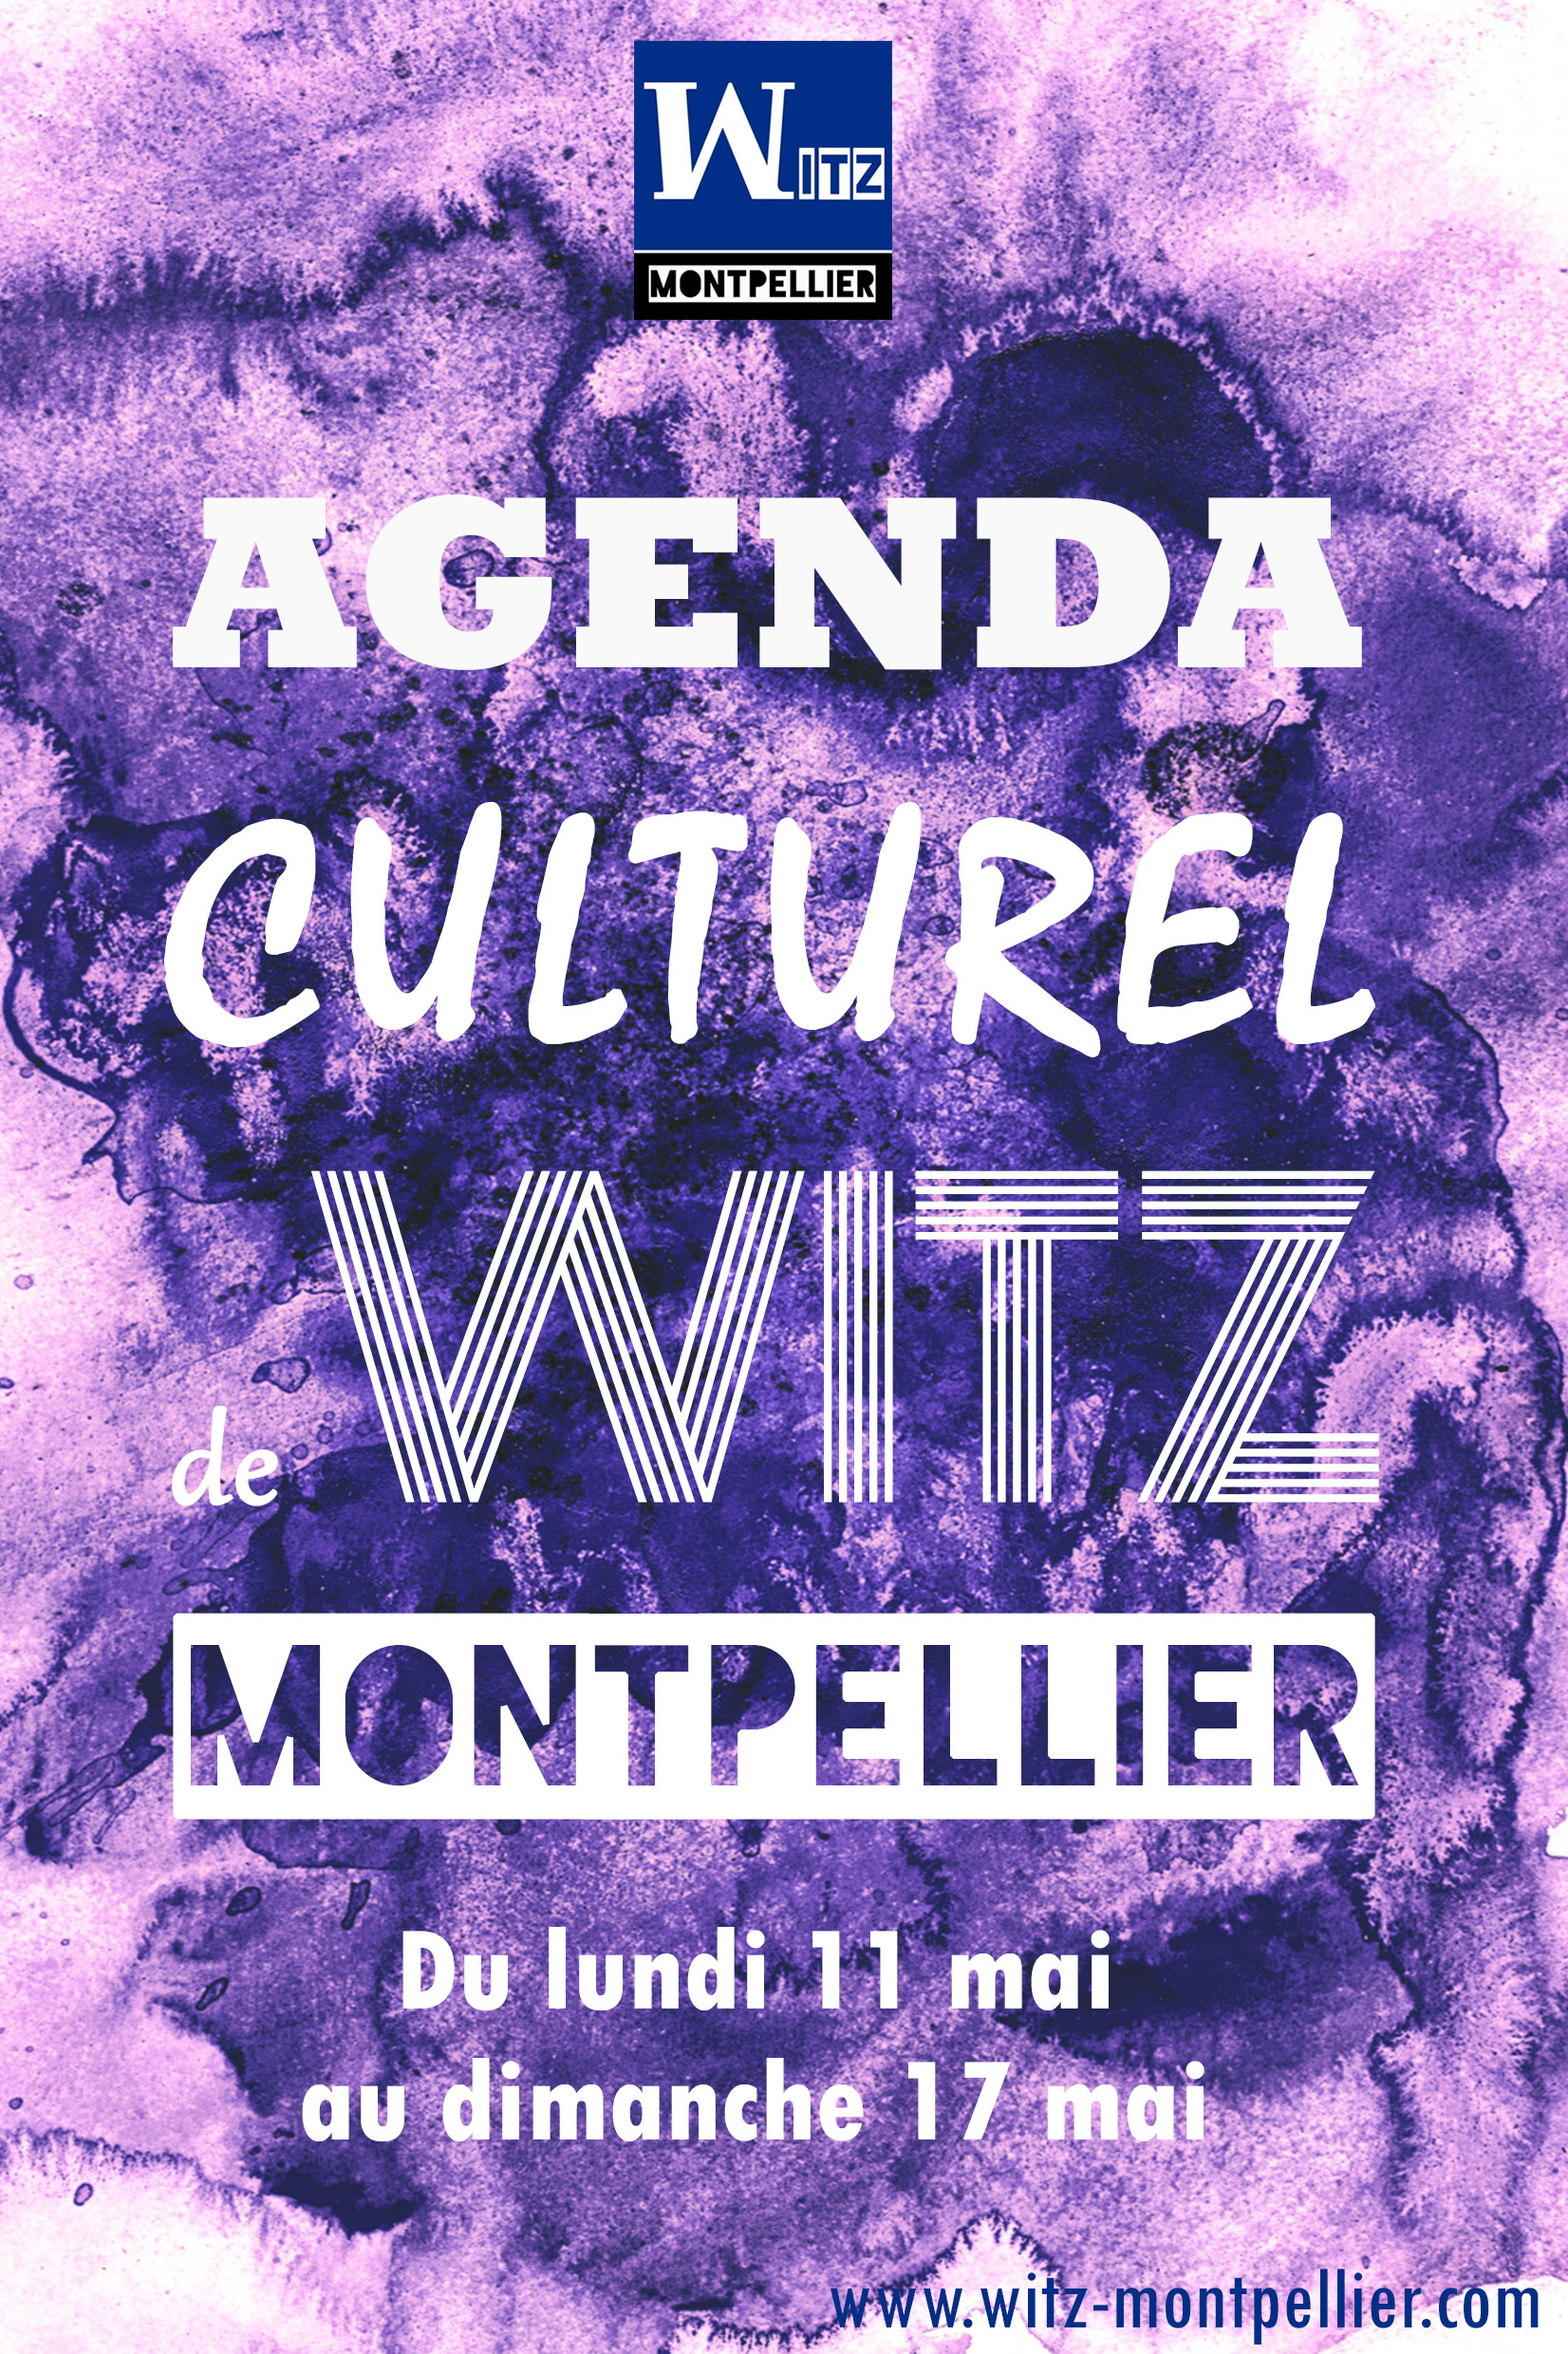 Agenda Witz Montpellier.jpg